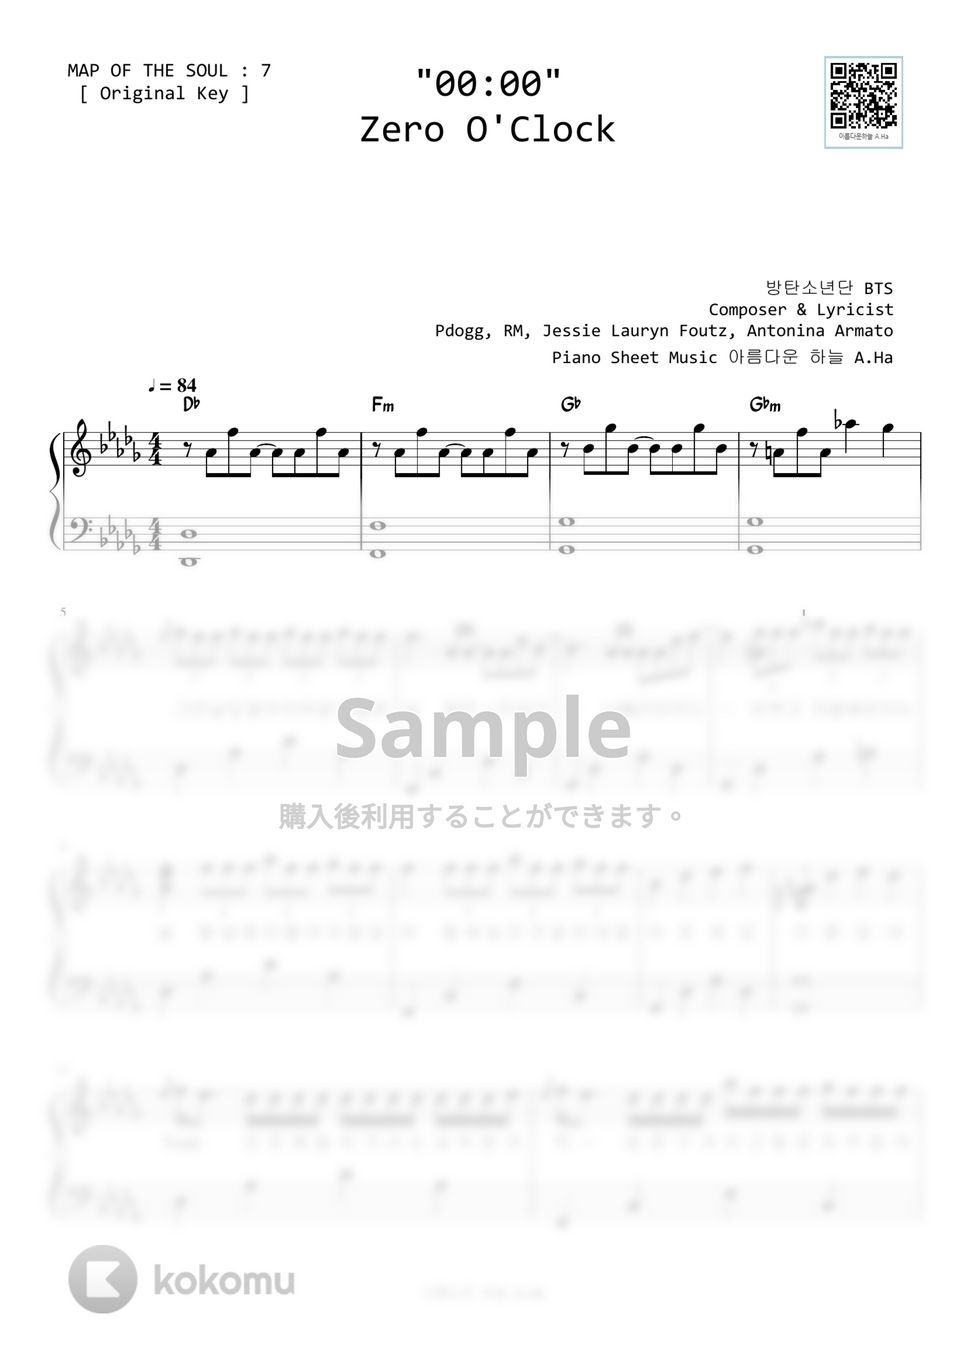 防弾少年団(BTS) - 00:00 (Original Key) by A.Ha